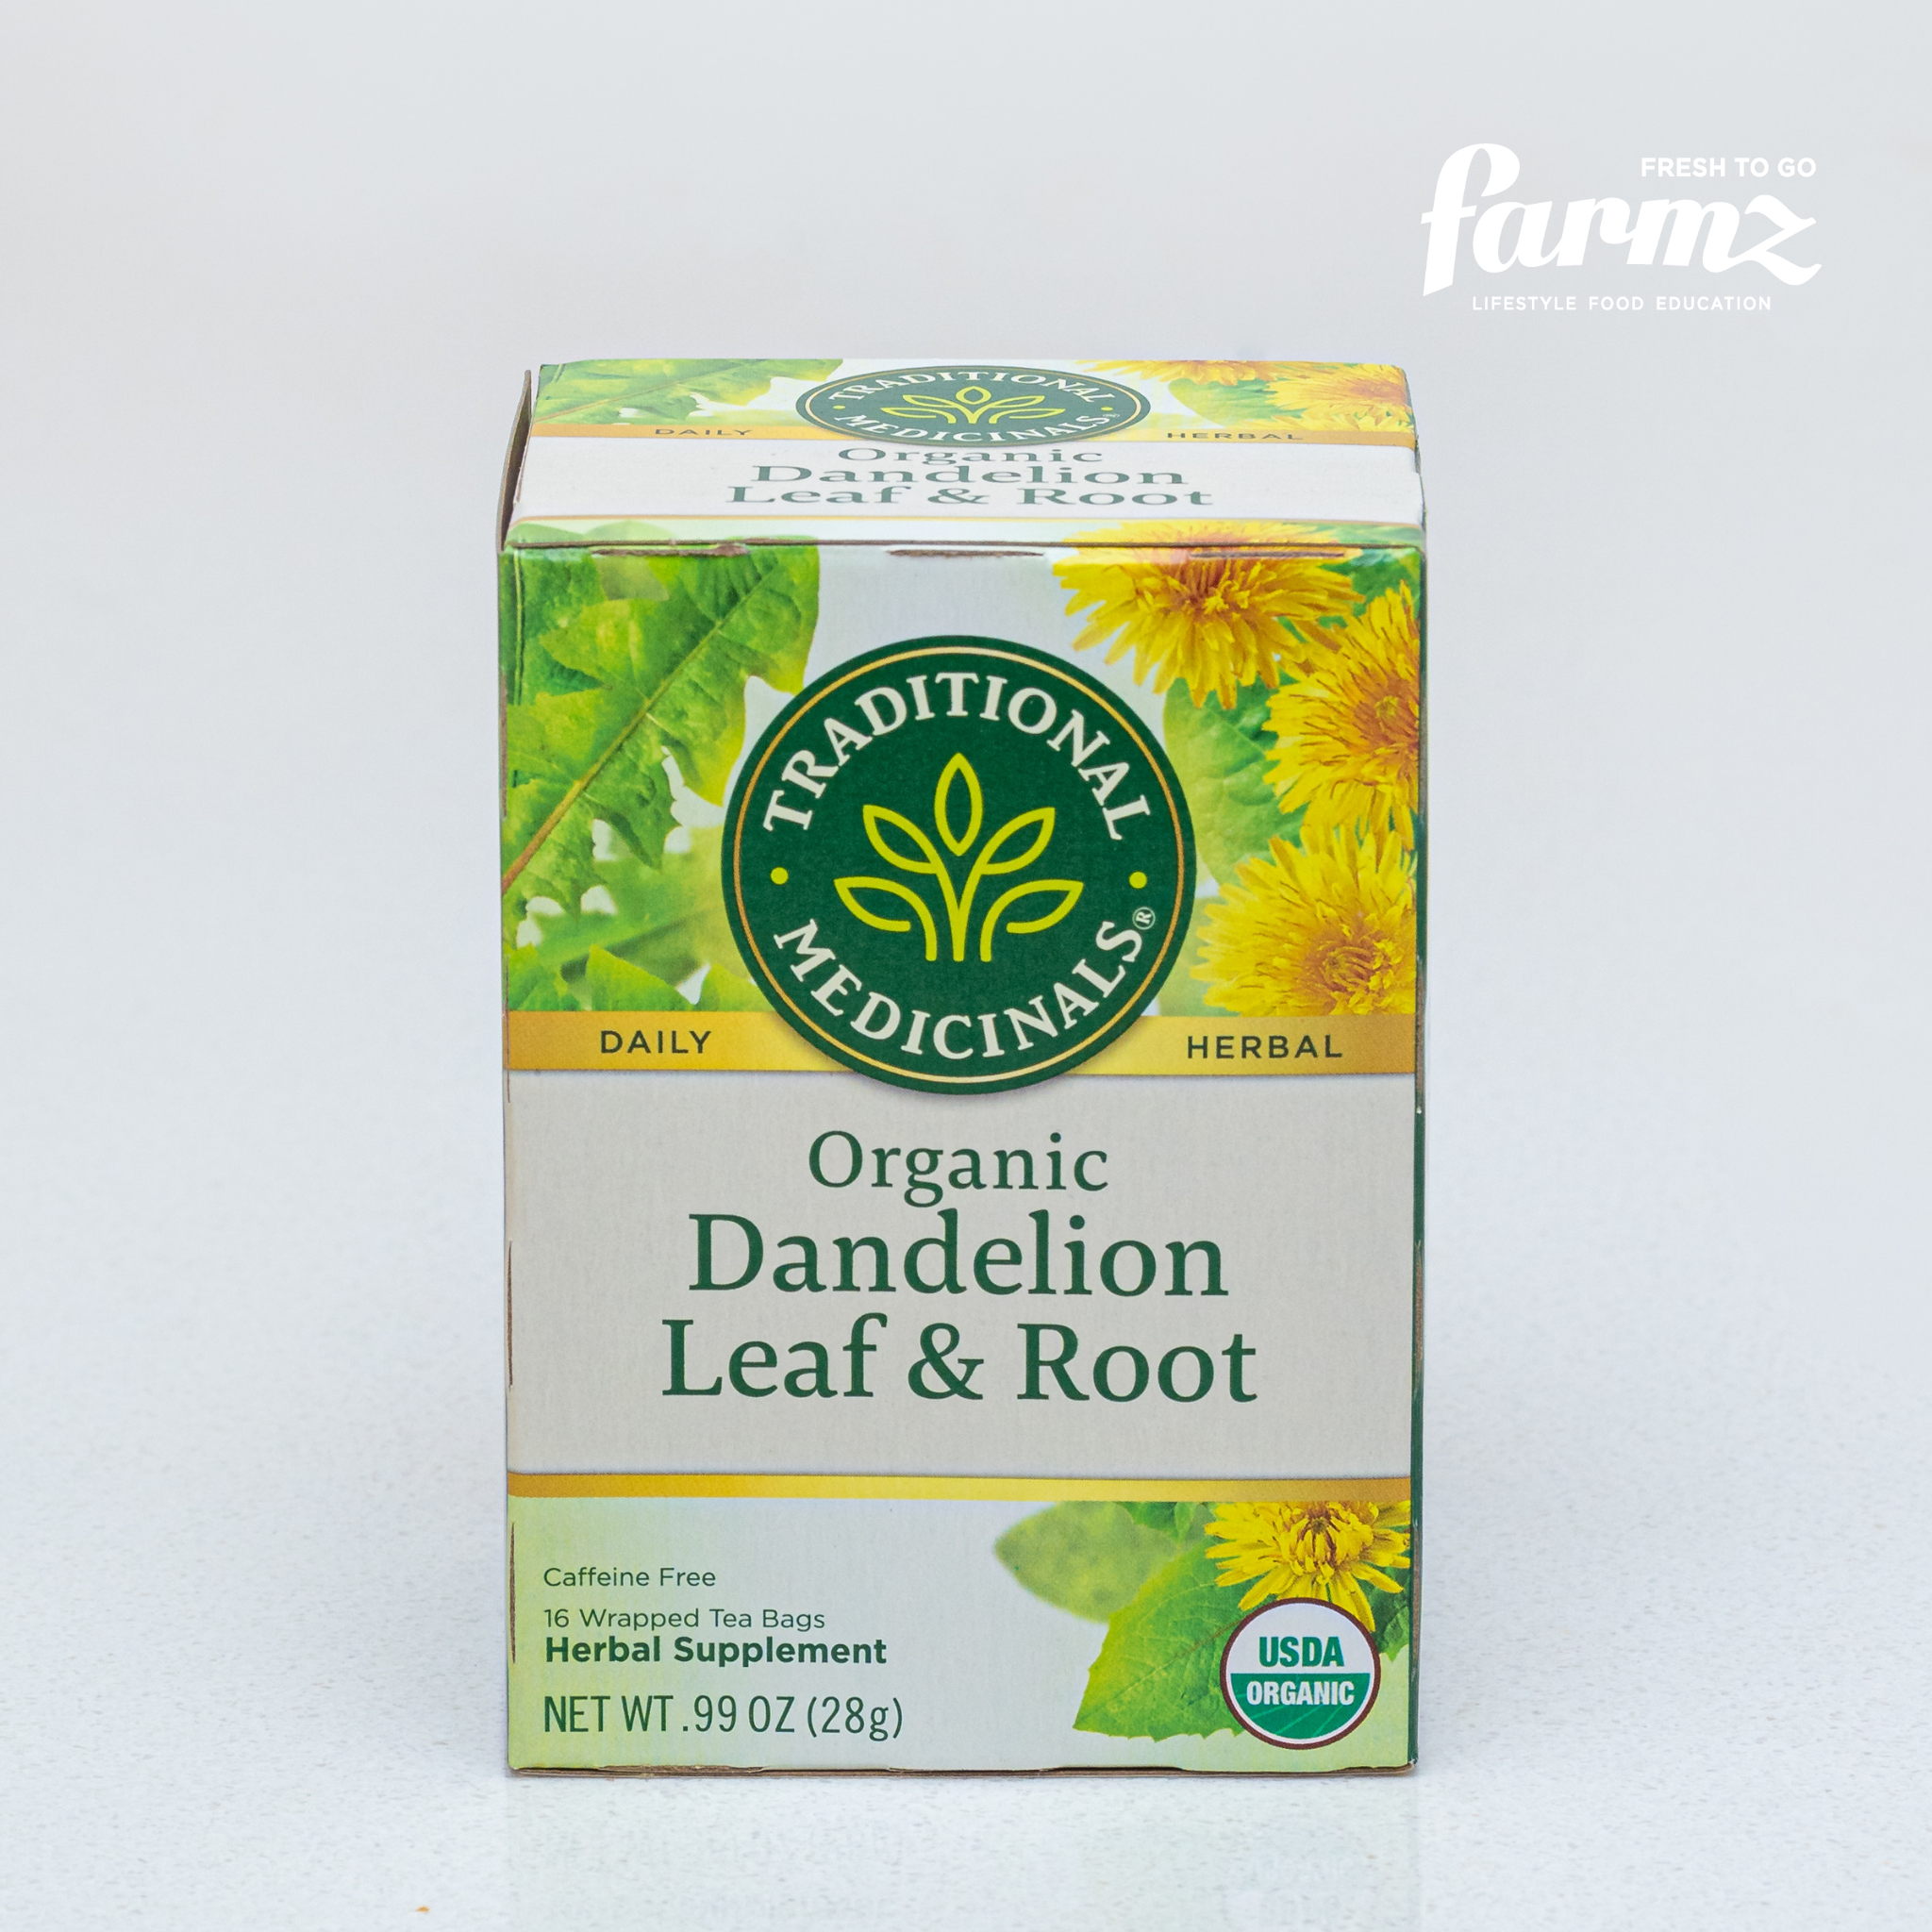 Organic Roasted Dandelion Root Tea